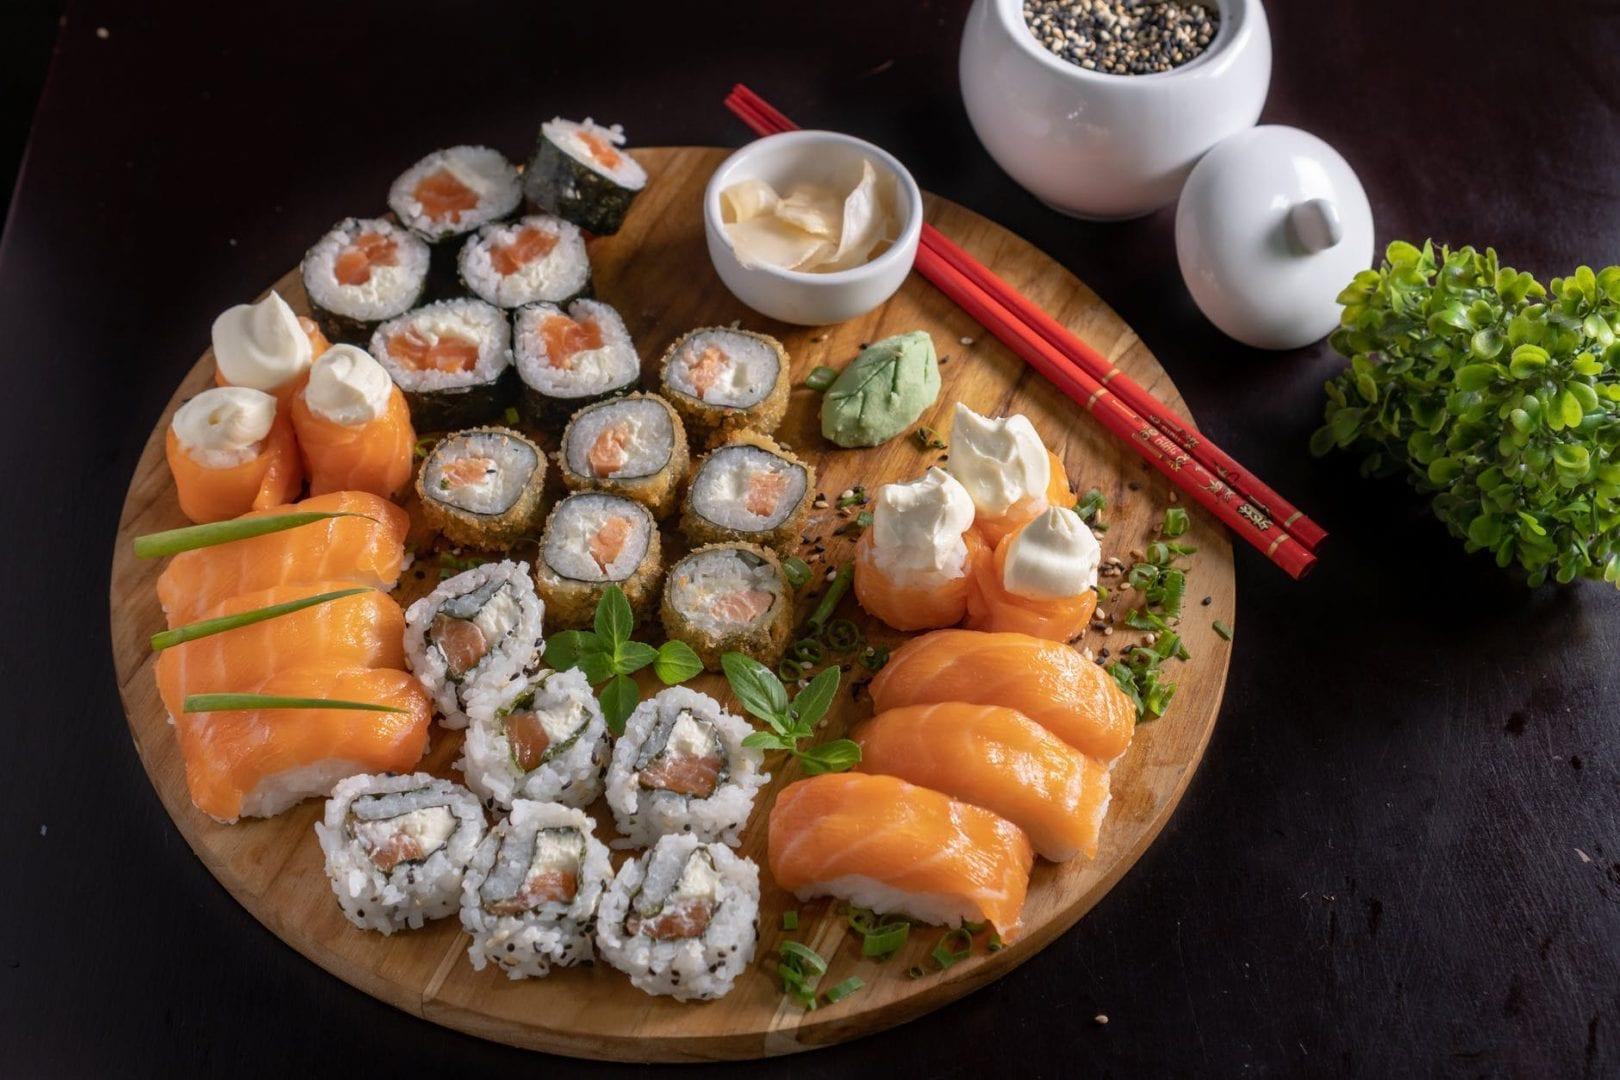 Comida japonesa em Anápolis: boas opções para experimentar